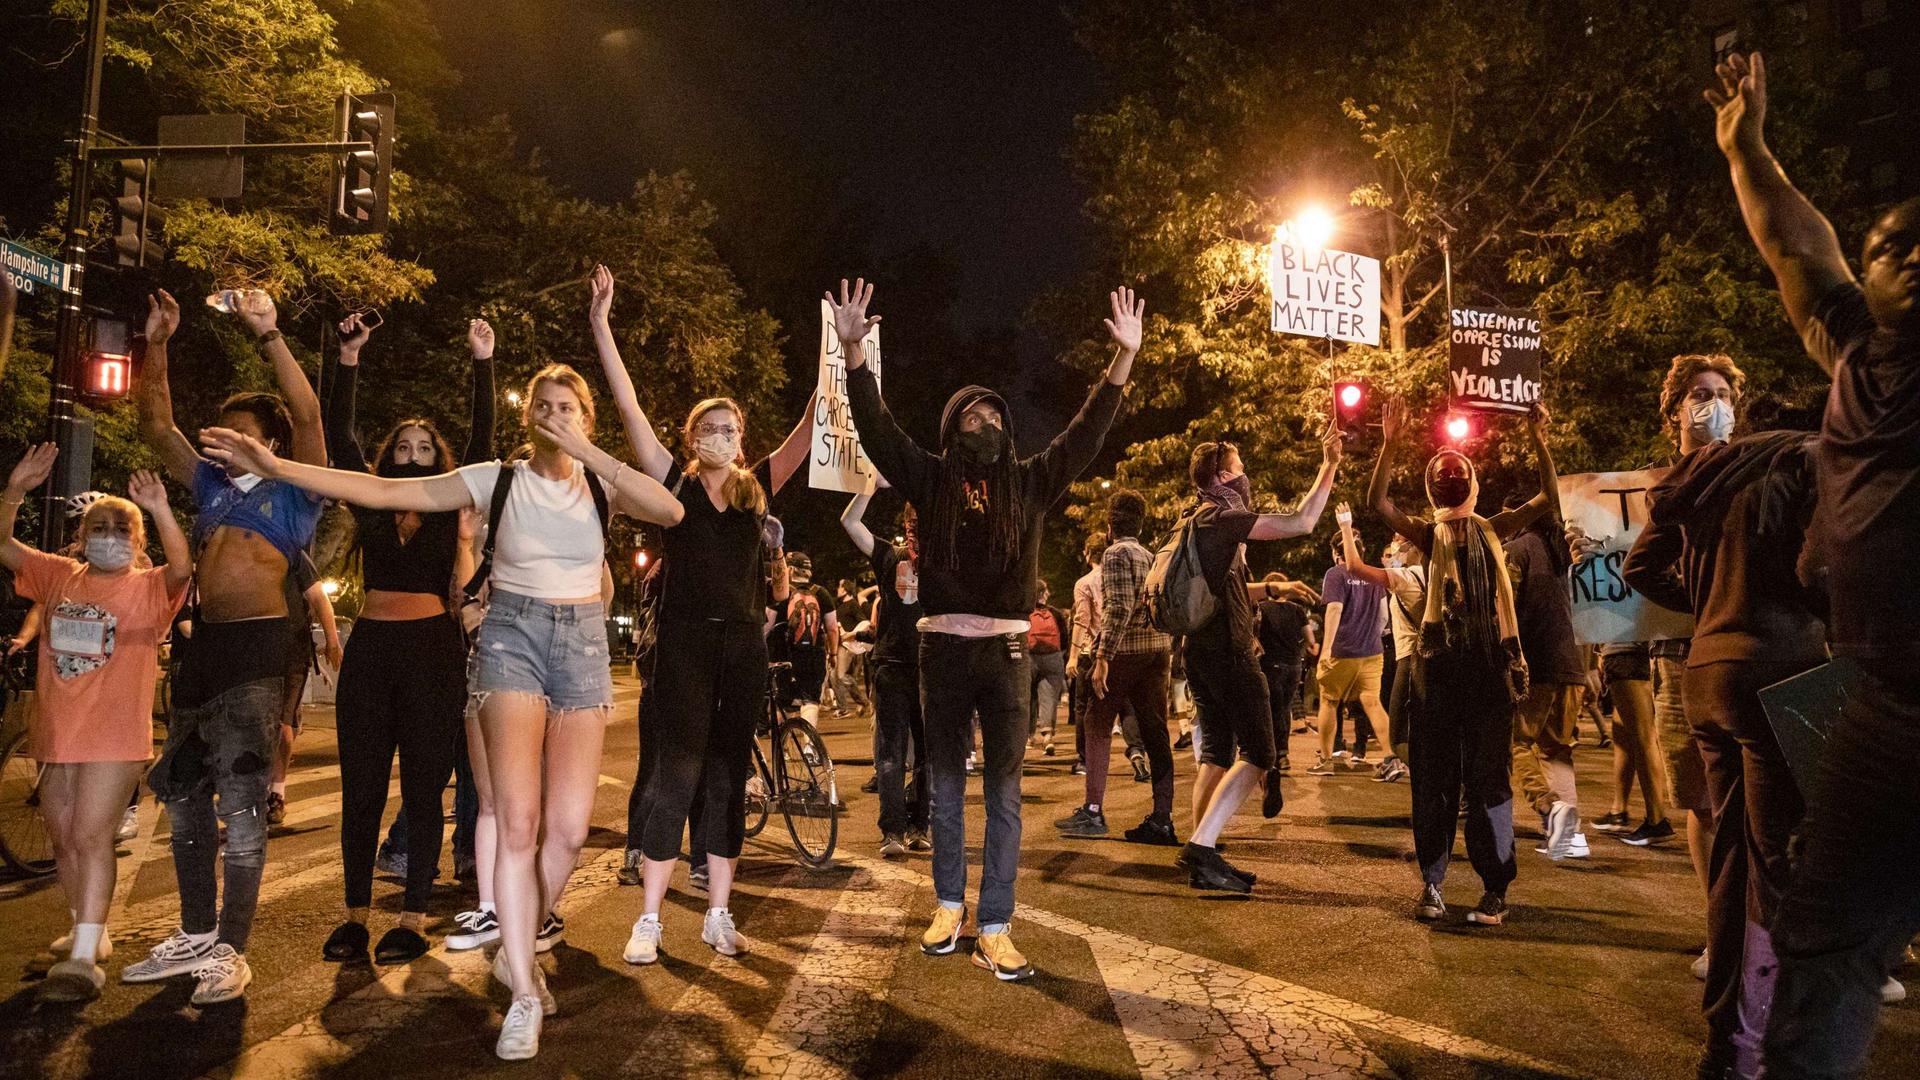 Manifestations multiraciales, pacifiques ou plus violentes, secouent maintenant le pays depuis une semaine.